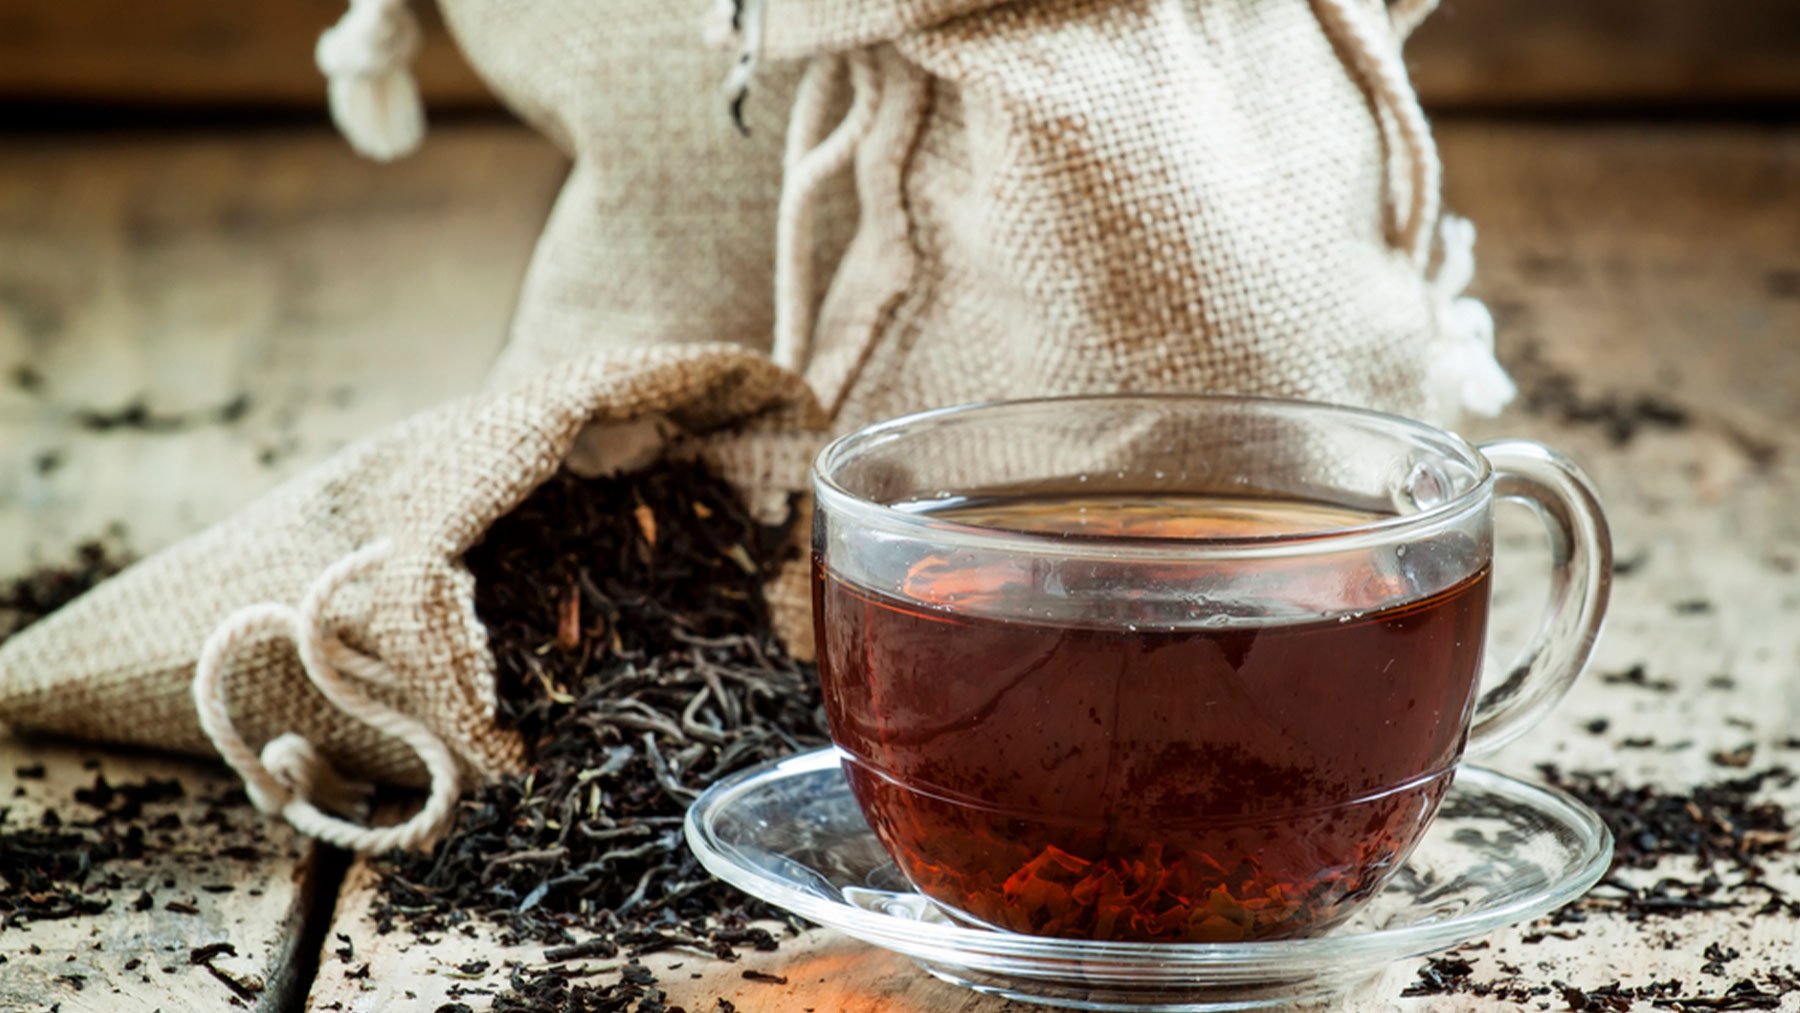 Estos efectos beneficiosos sobre el control metabólico pueden residir en la forma única en que se produce el té negro.